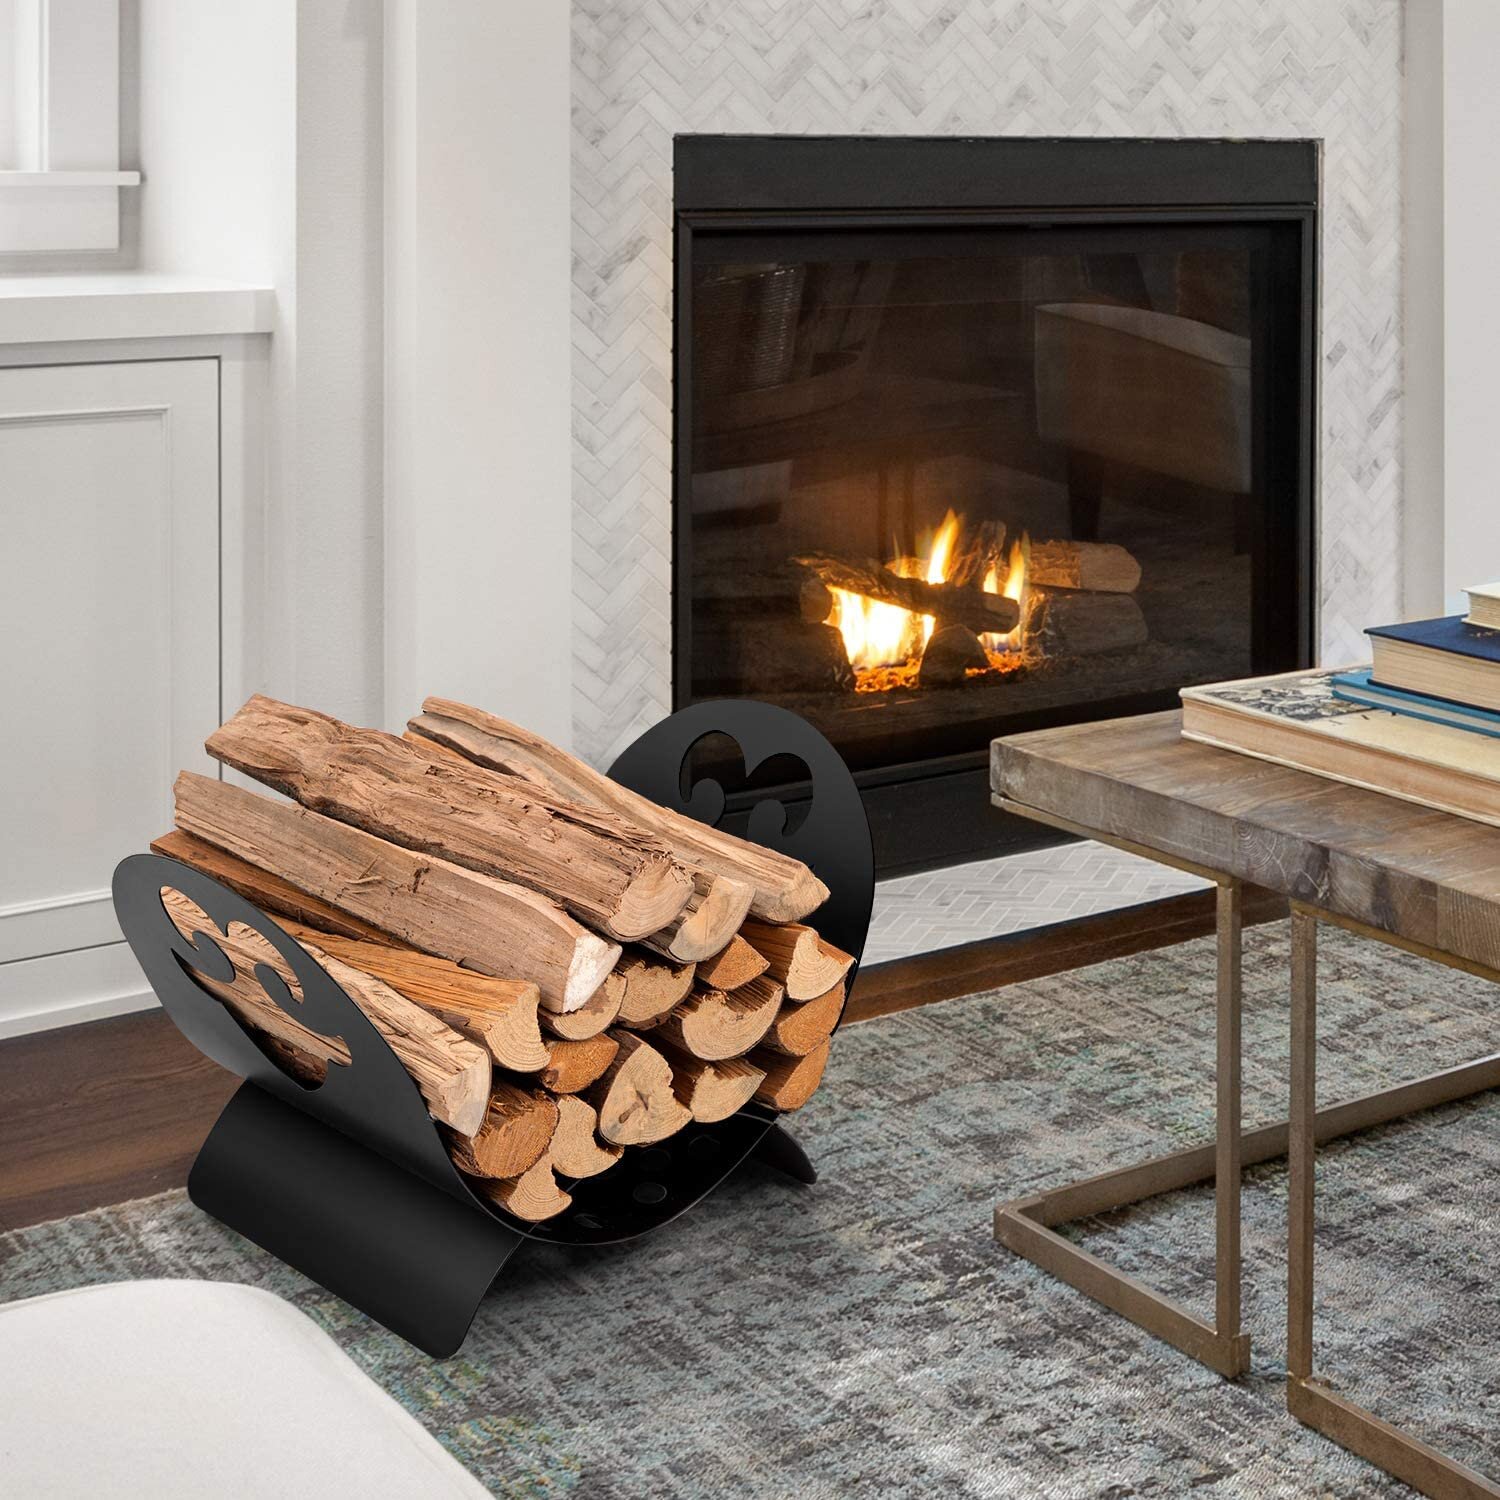 20" Indoor/Outdoor Firewood Log Rack Steel Fireplace Storage Holder